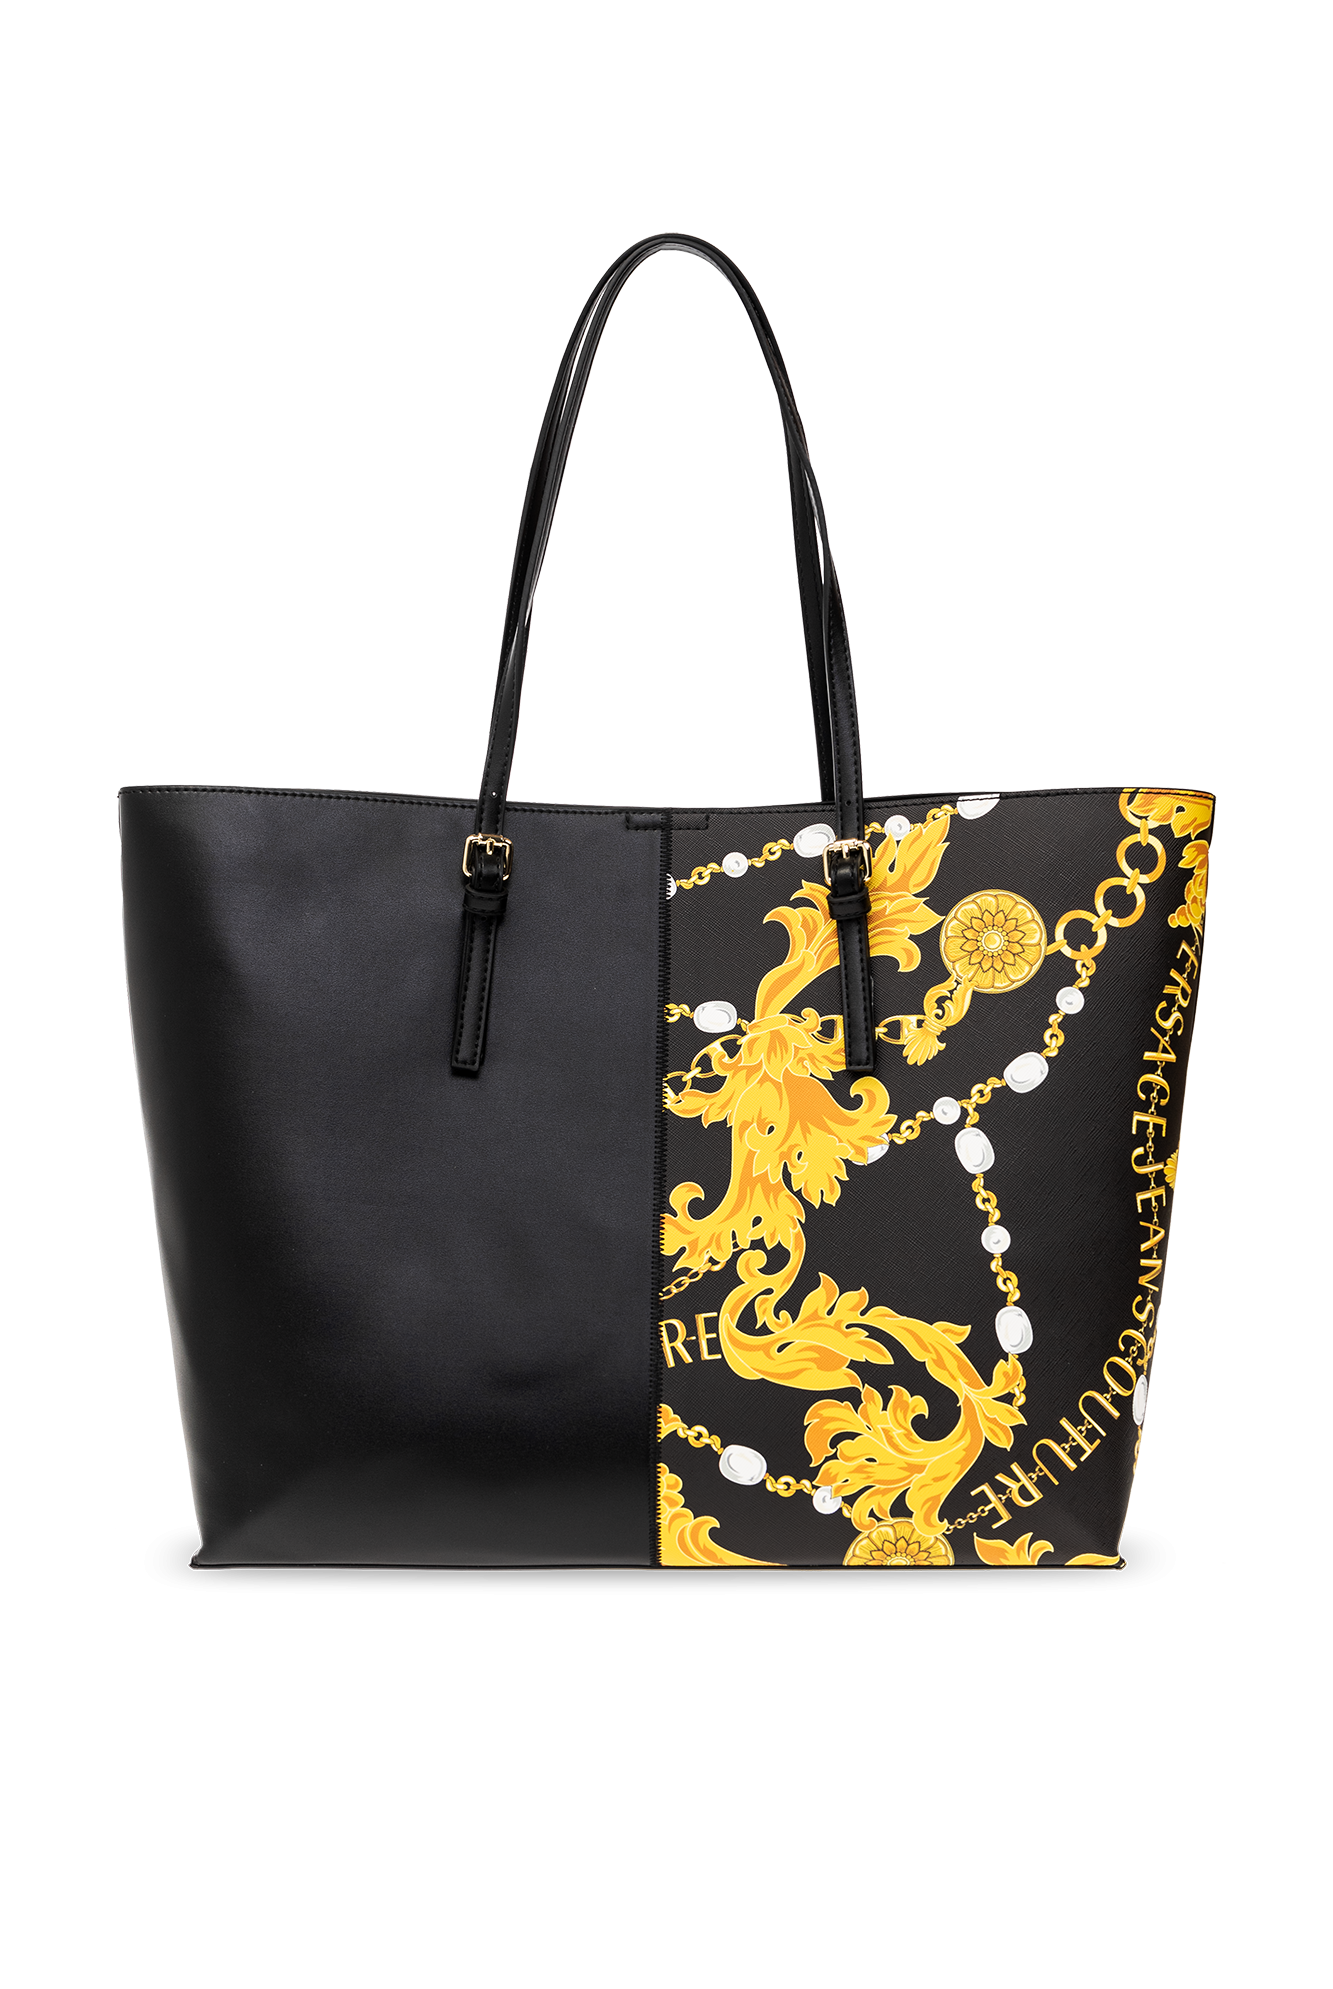 Versace Jeans Couture Shopper bag | Women's Bags | Vitkac